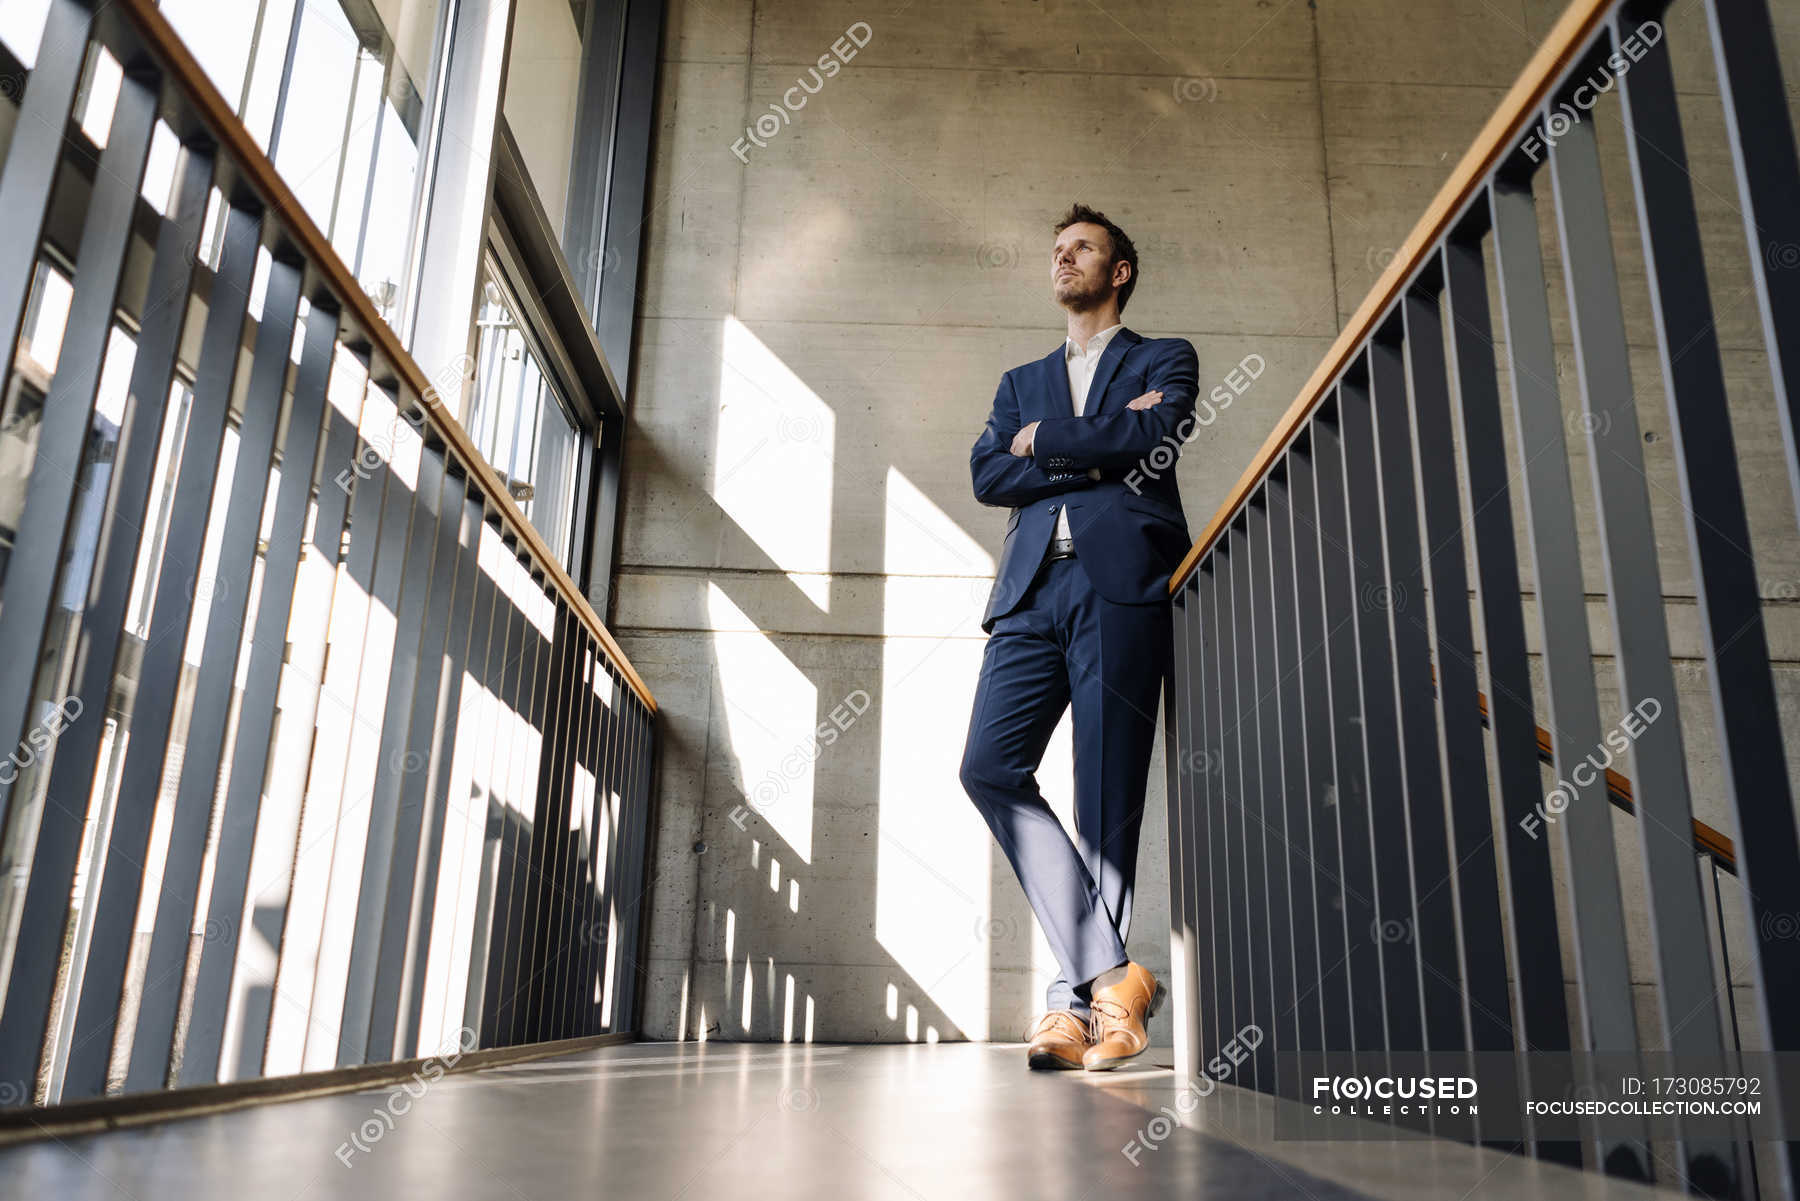 Поднимается снизу вверх. Человек в костюме на лестнице. Мужчина стоит на лестнице. Человек в костюме ракурс. Человек стоящий на лестницы.